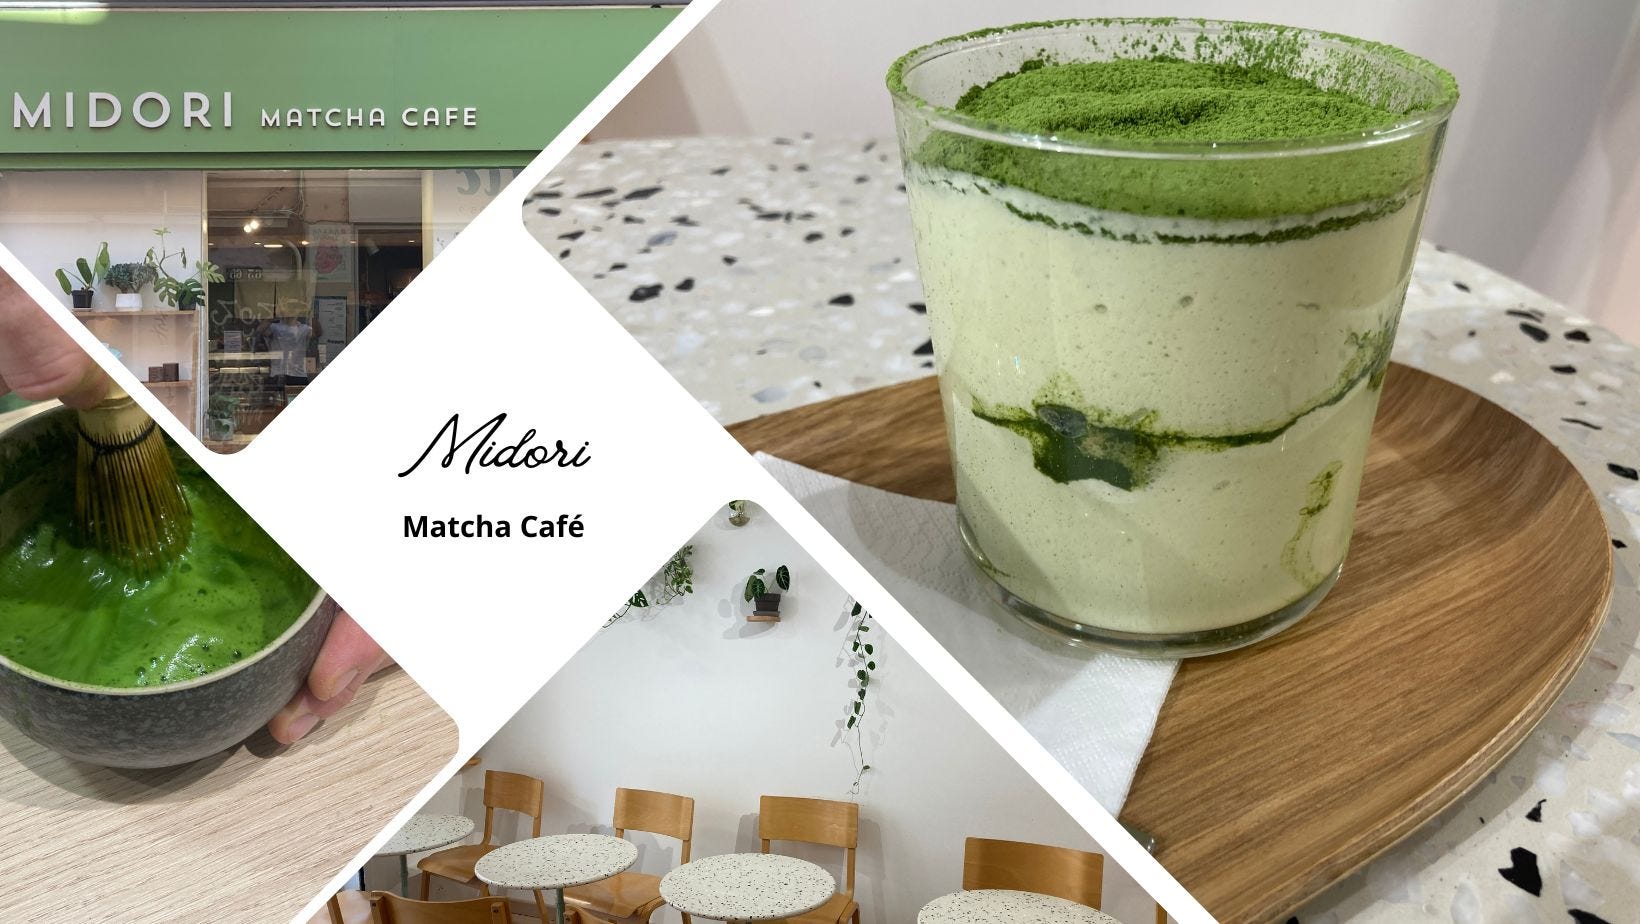 On a testé : Midori Matcha Café, mettez-vous au vert ! 🍵 7 à déguster